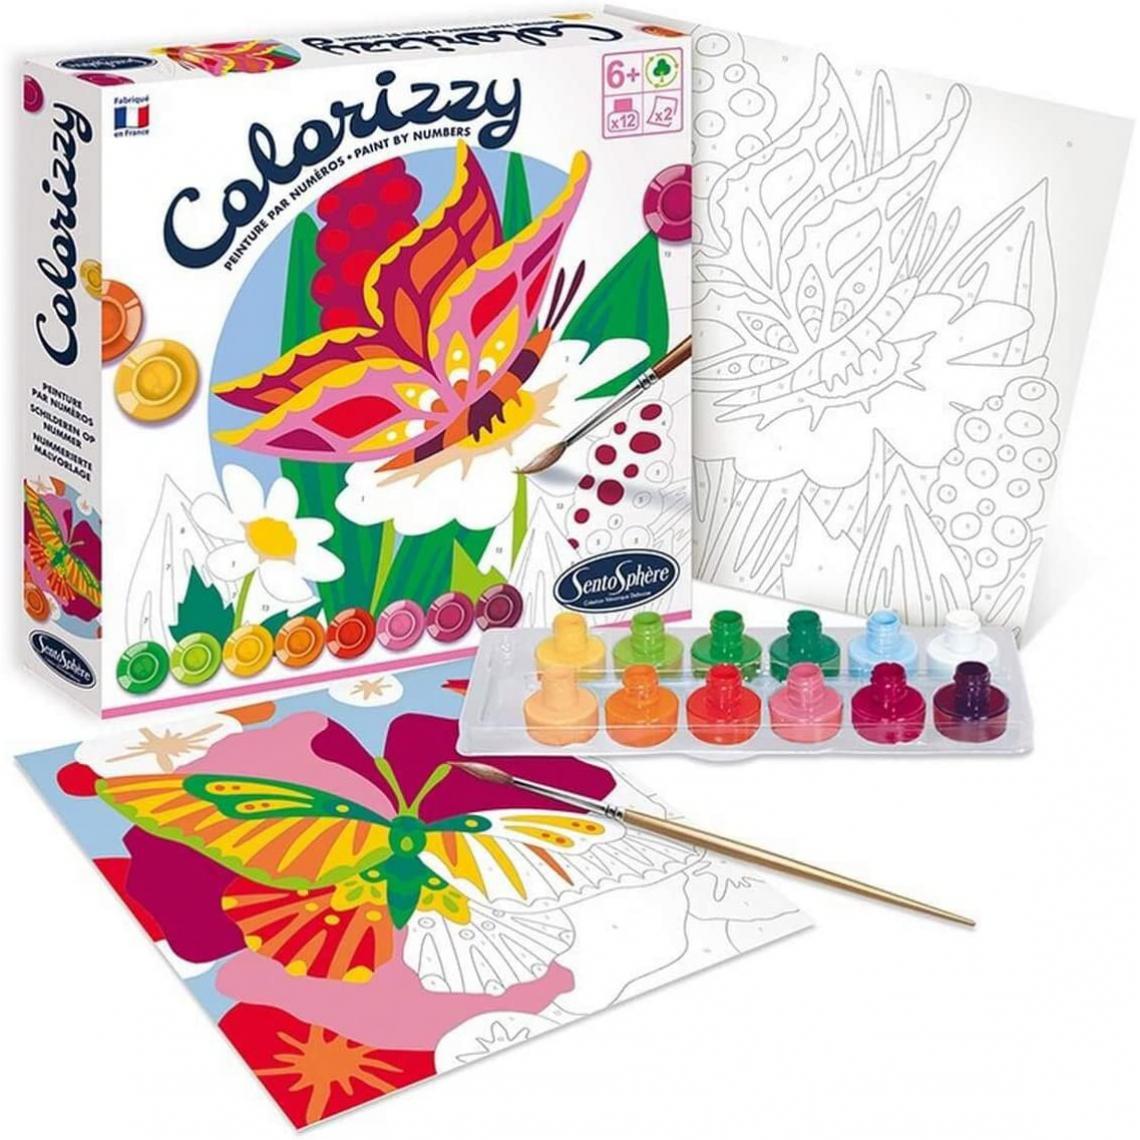 SentoSphere - Colorizzy papillons - Dessin et peinture